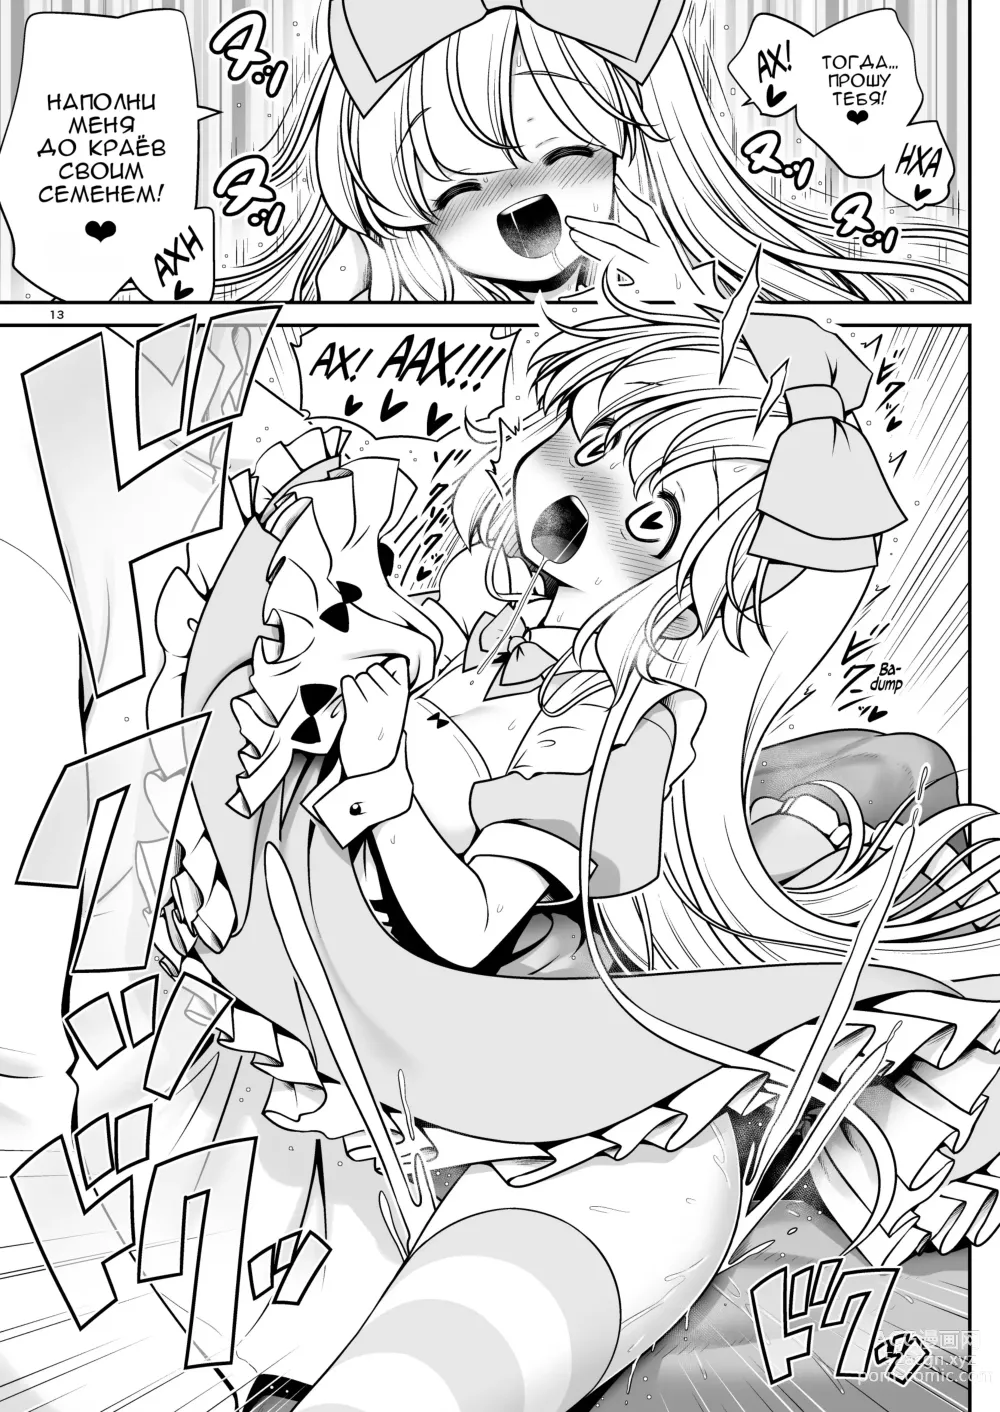 Page 13 of doujinshi Безнадёжная алиса, которая настолько подсела на сексуальное лечение, что без разбора ела все ядовитые пироженки